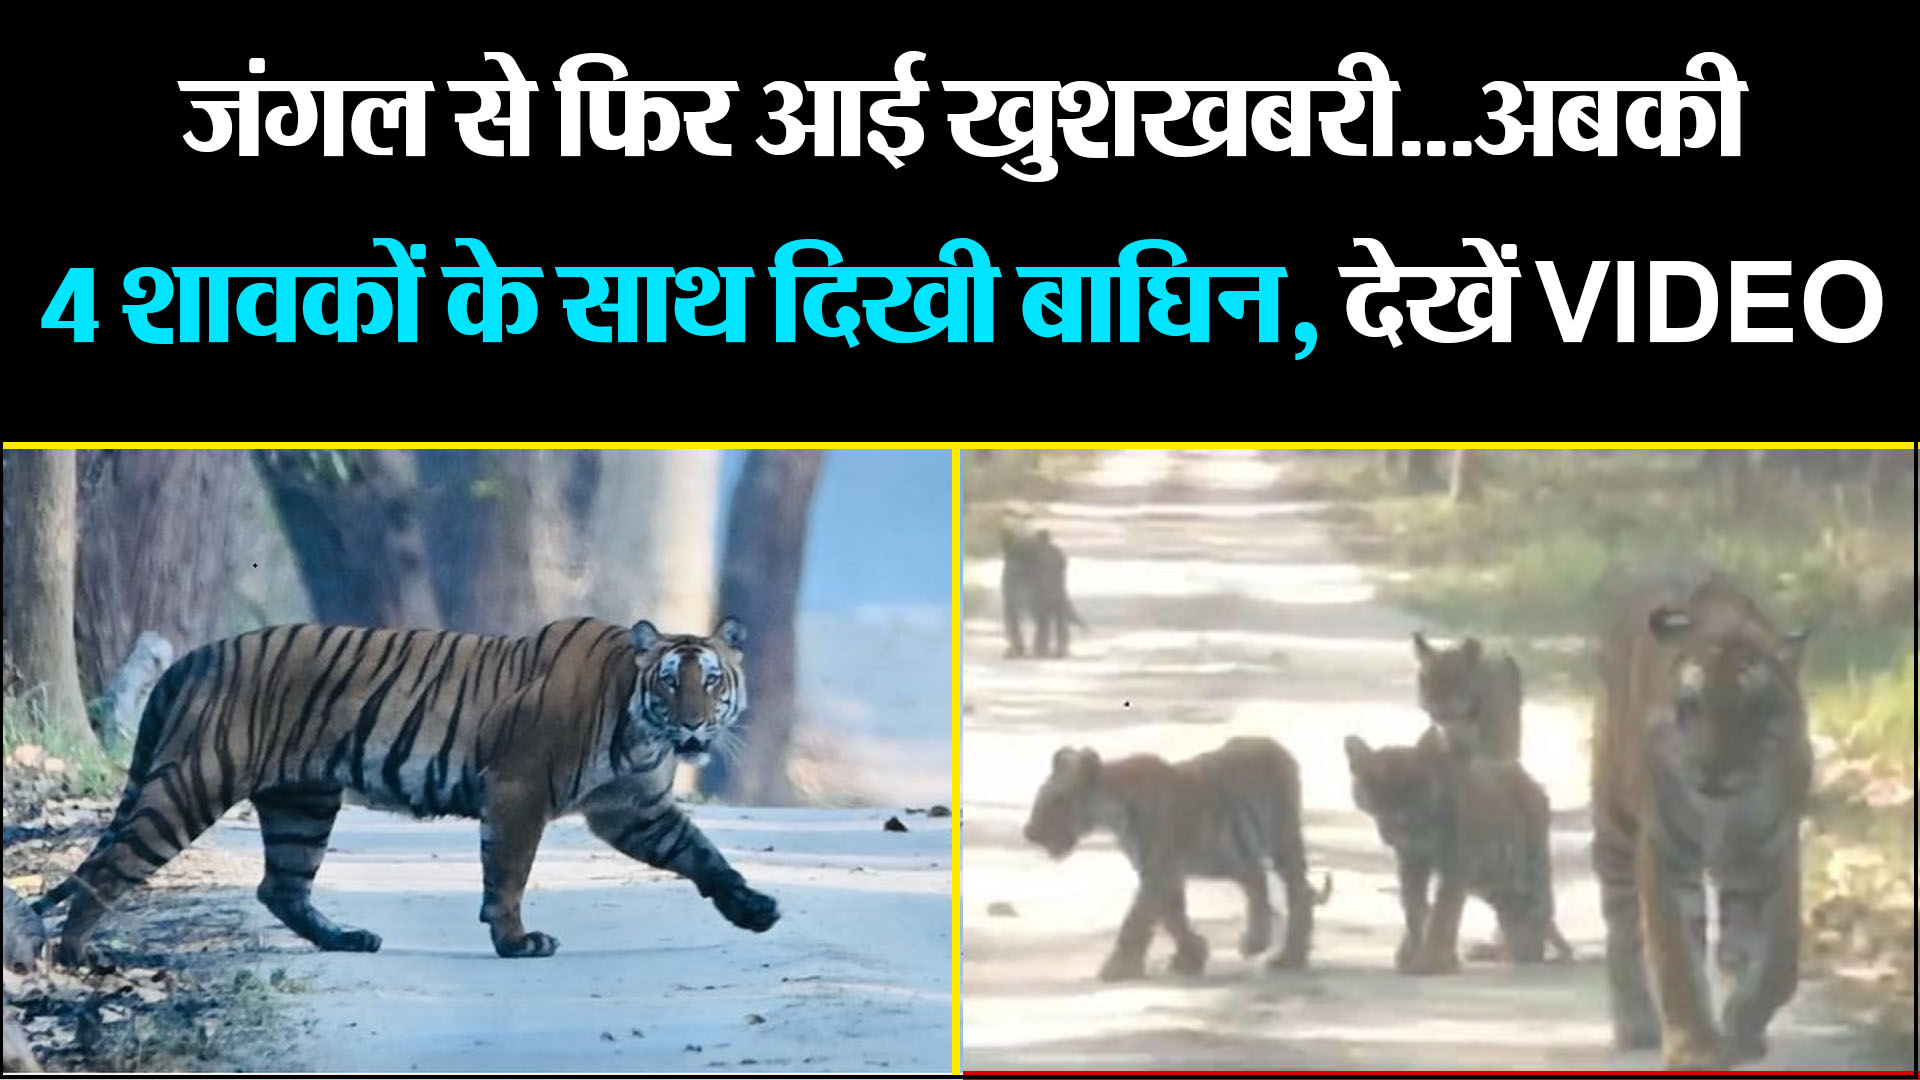 लखीमपुर खीरी: जंगल से फिर आई खुशखबरी...अबकी 4 शावकों के साथ दिखी बाघिन, देखें VIDEO